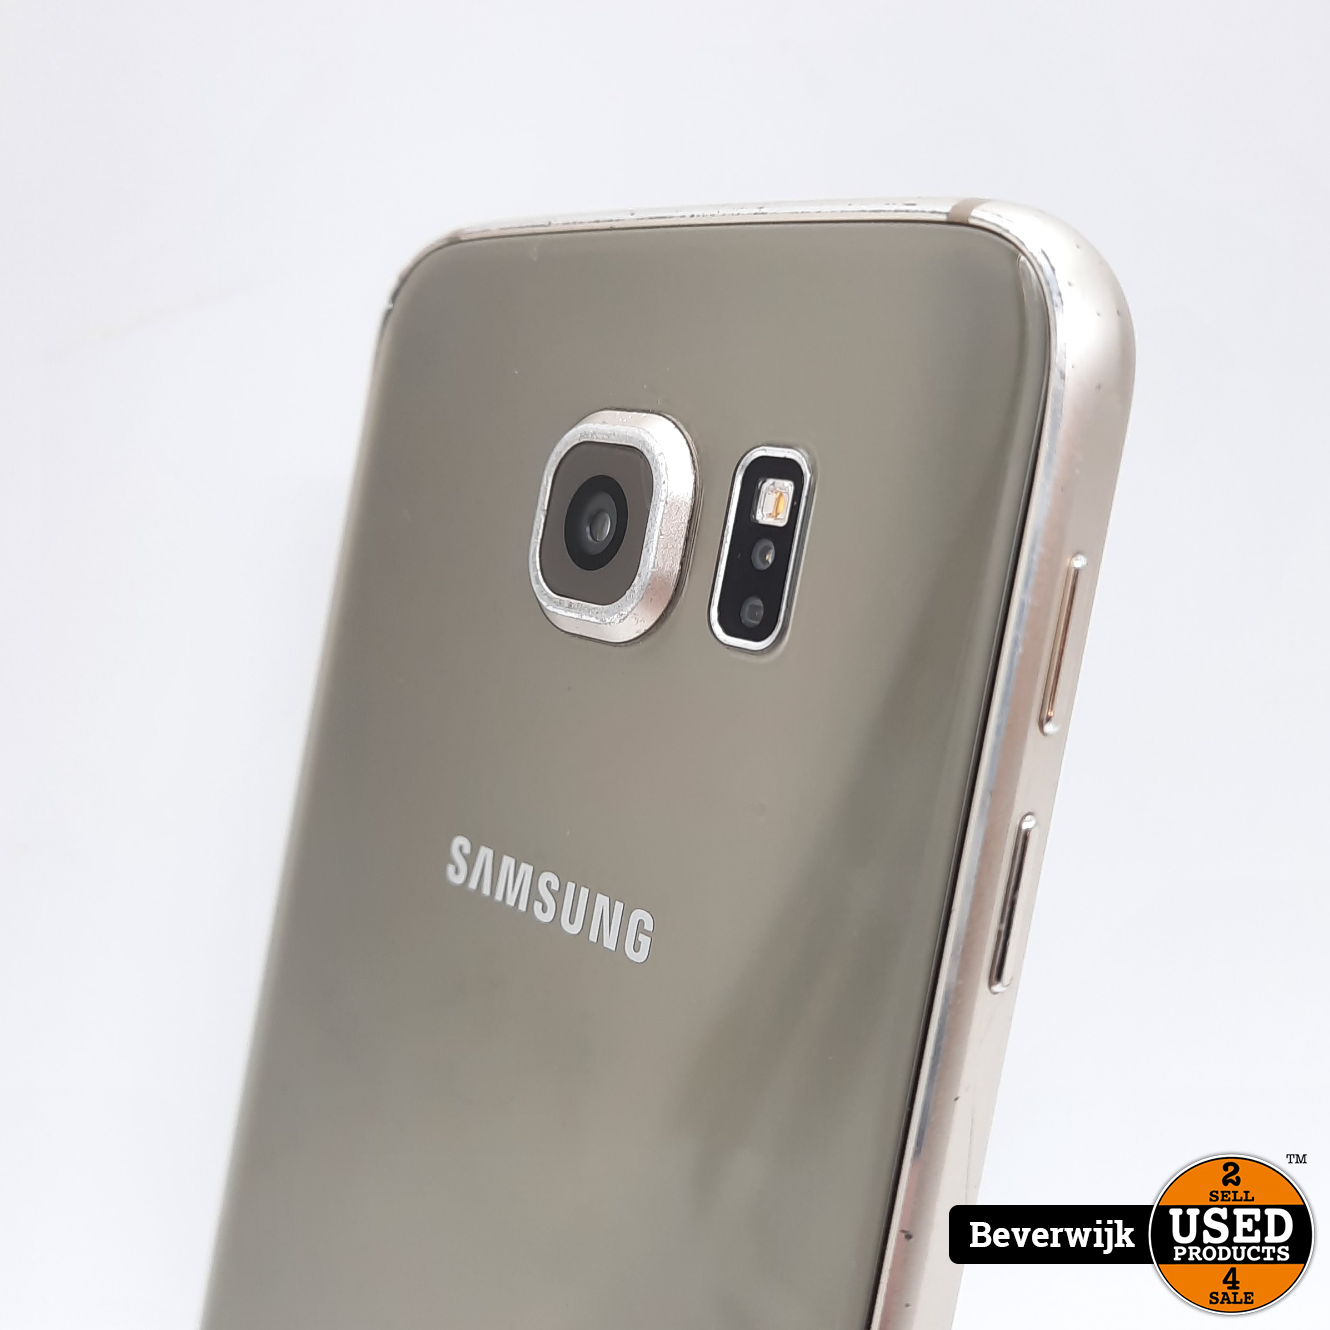 heroïsch Diakritisch Moedig Samsung Galaxy S6 32 GB Goud - In Goede Staat! - Used Products Beverwijk